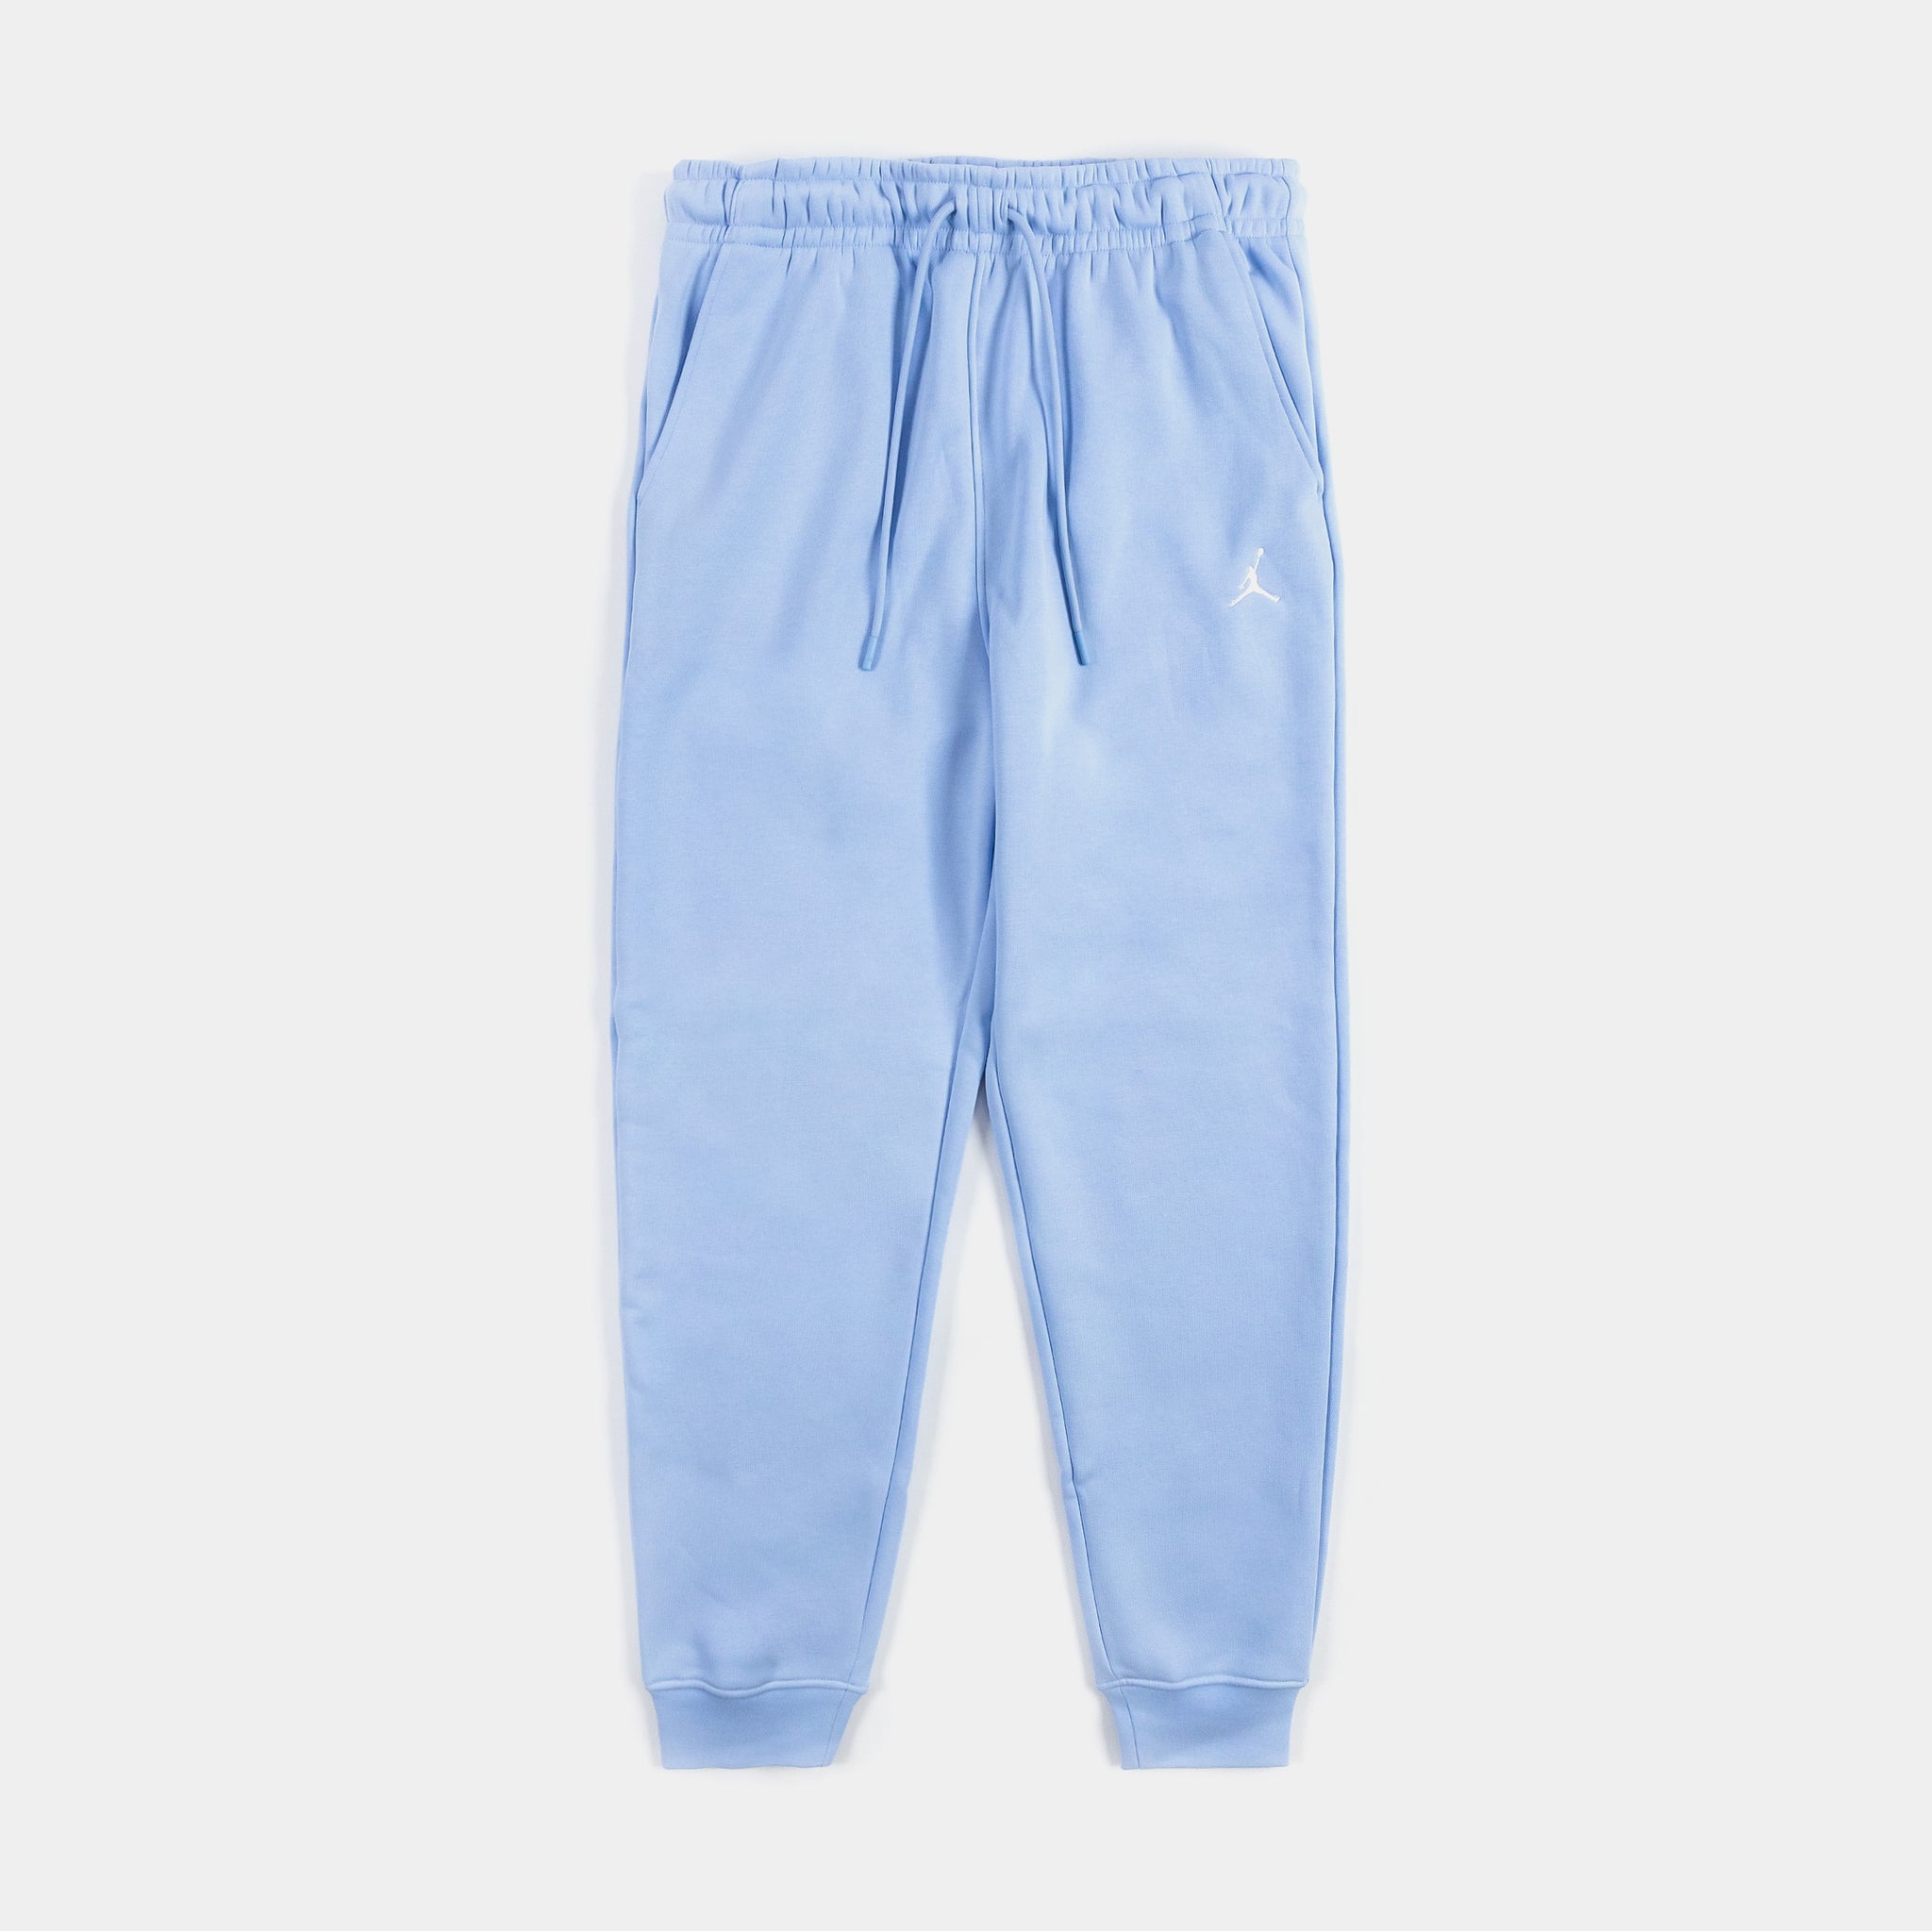 Mens Jogger Shoe Palace – Essentials Pants FJ7779-425 Fleece Jordan Blue